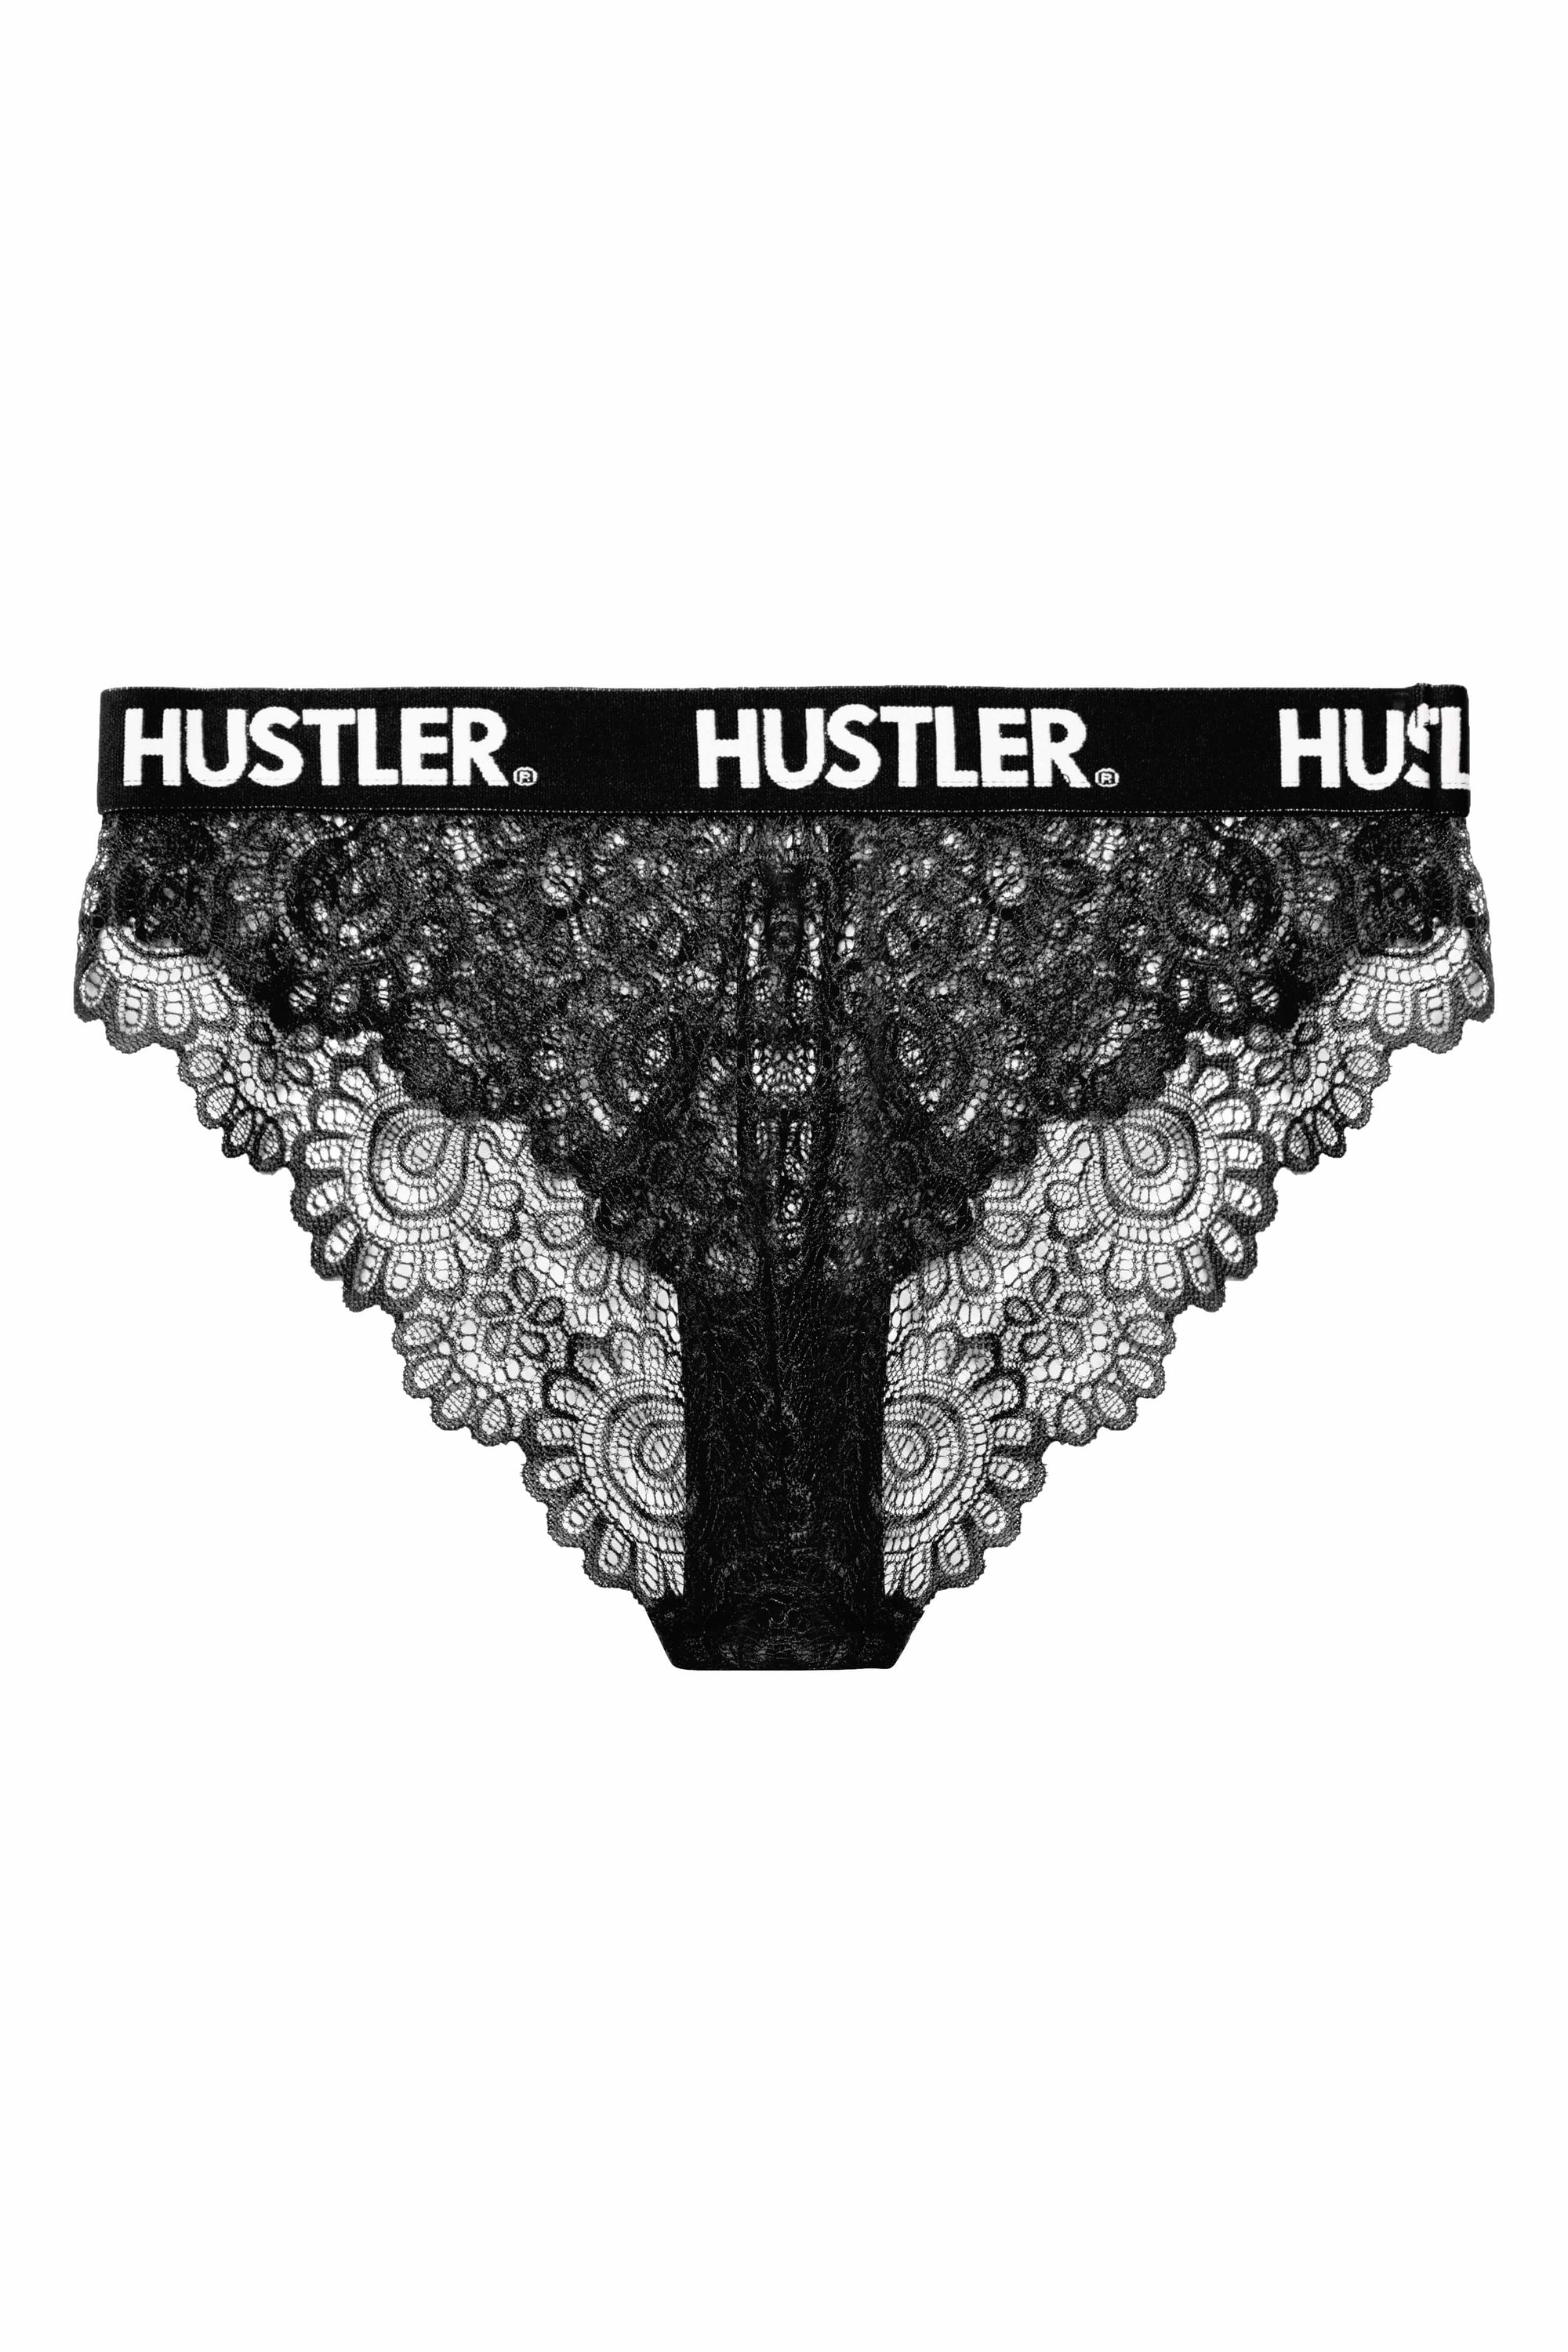 Hustler Branded Black Curve Lace Brief